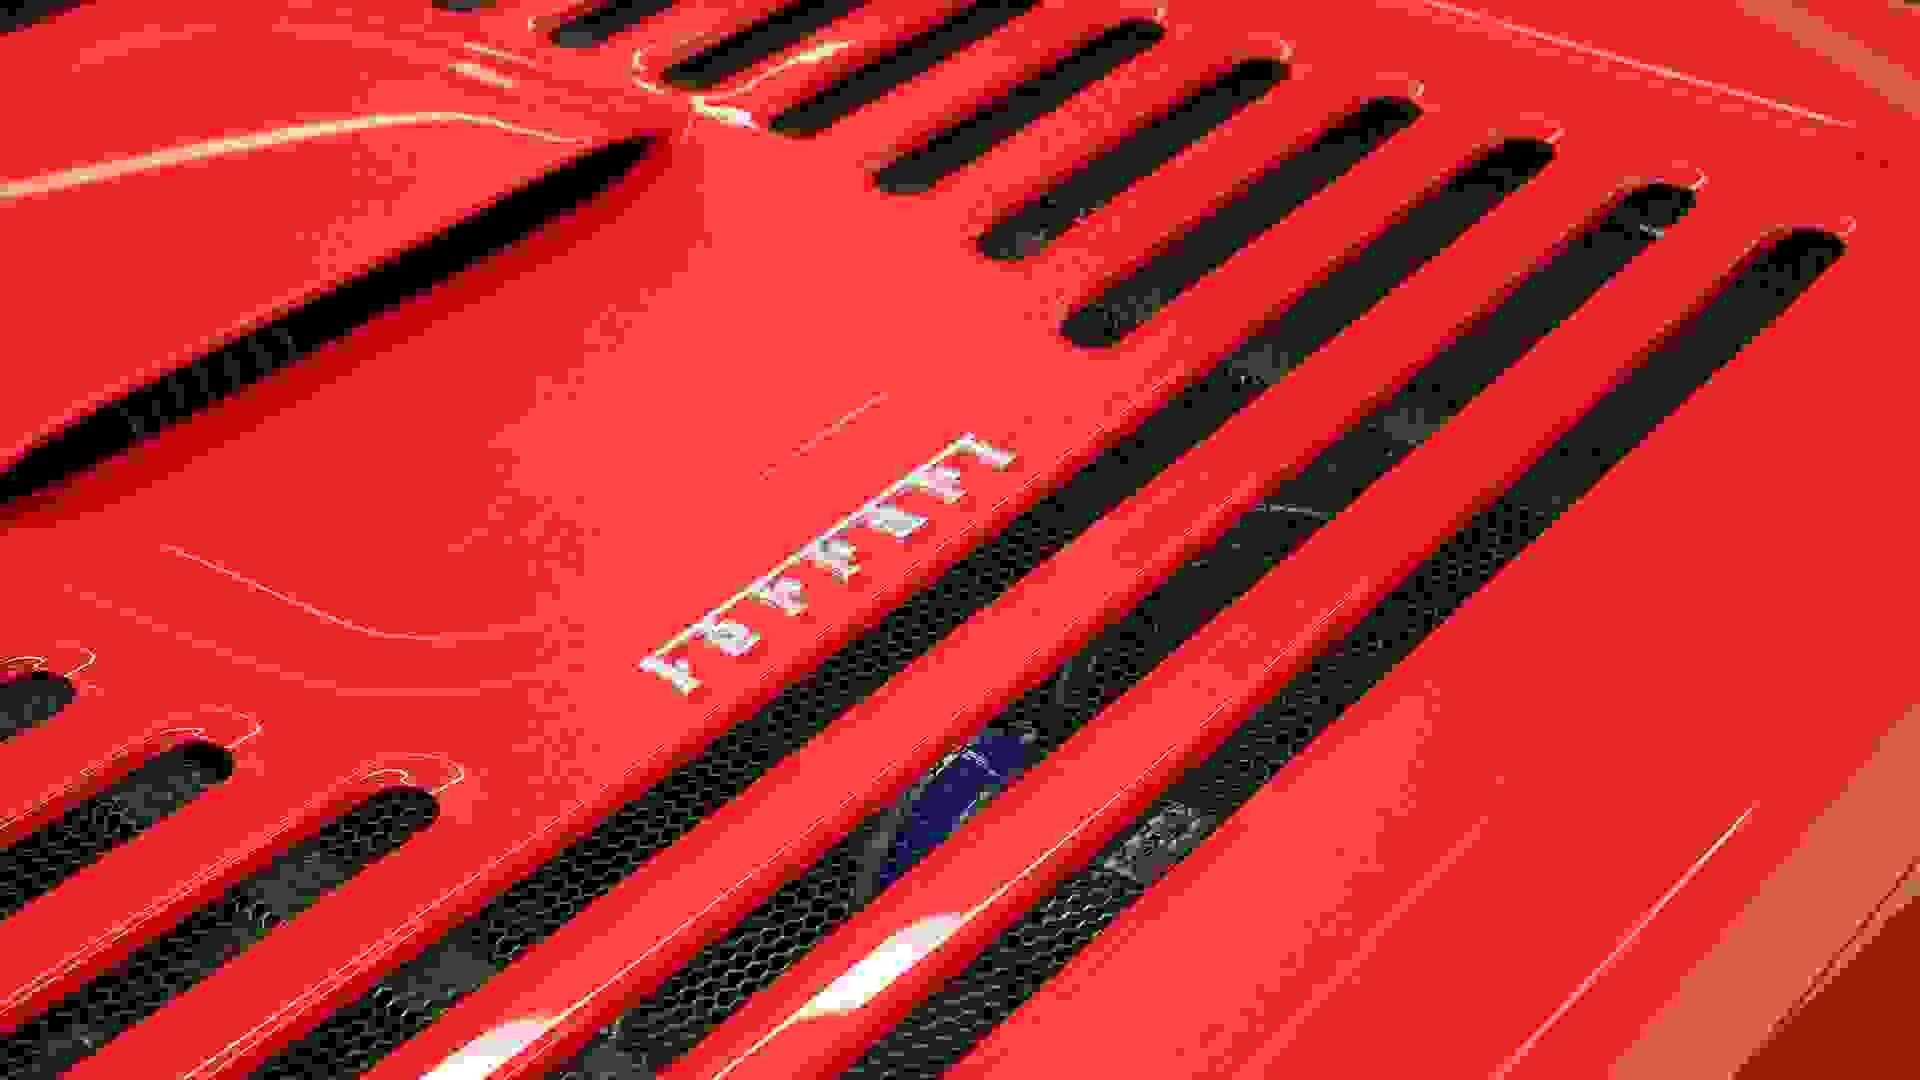 Ferrari 355 Photo b8a1302d-c82f-4978-8f71-aad3432aeeb5.jpg